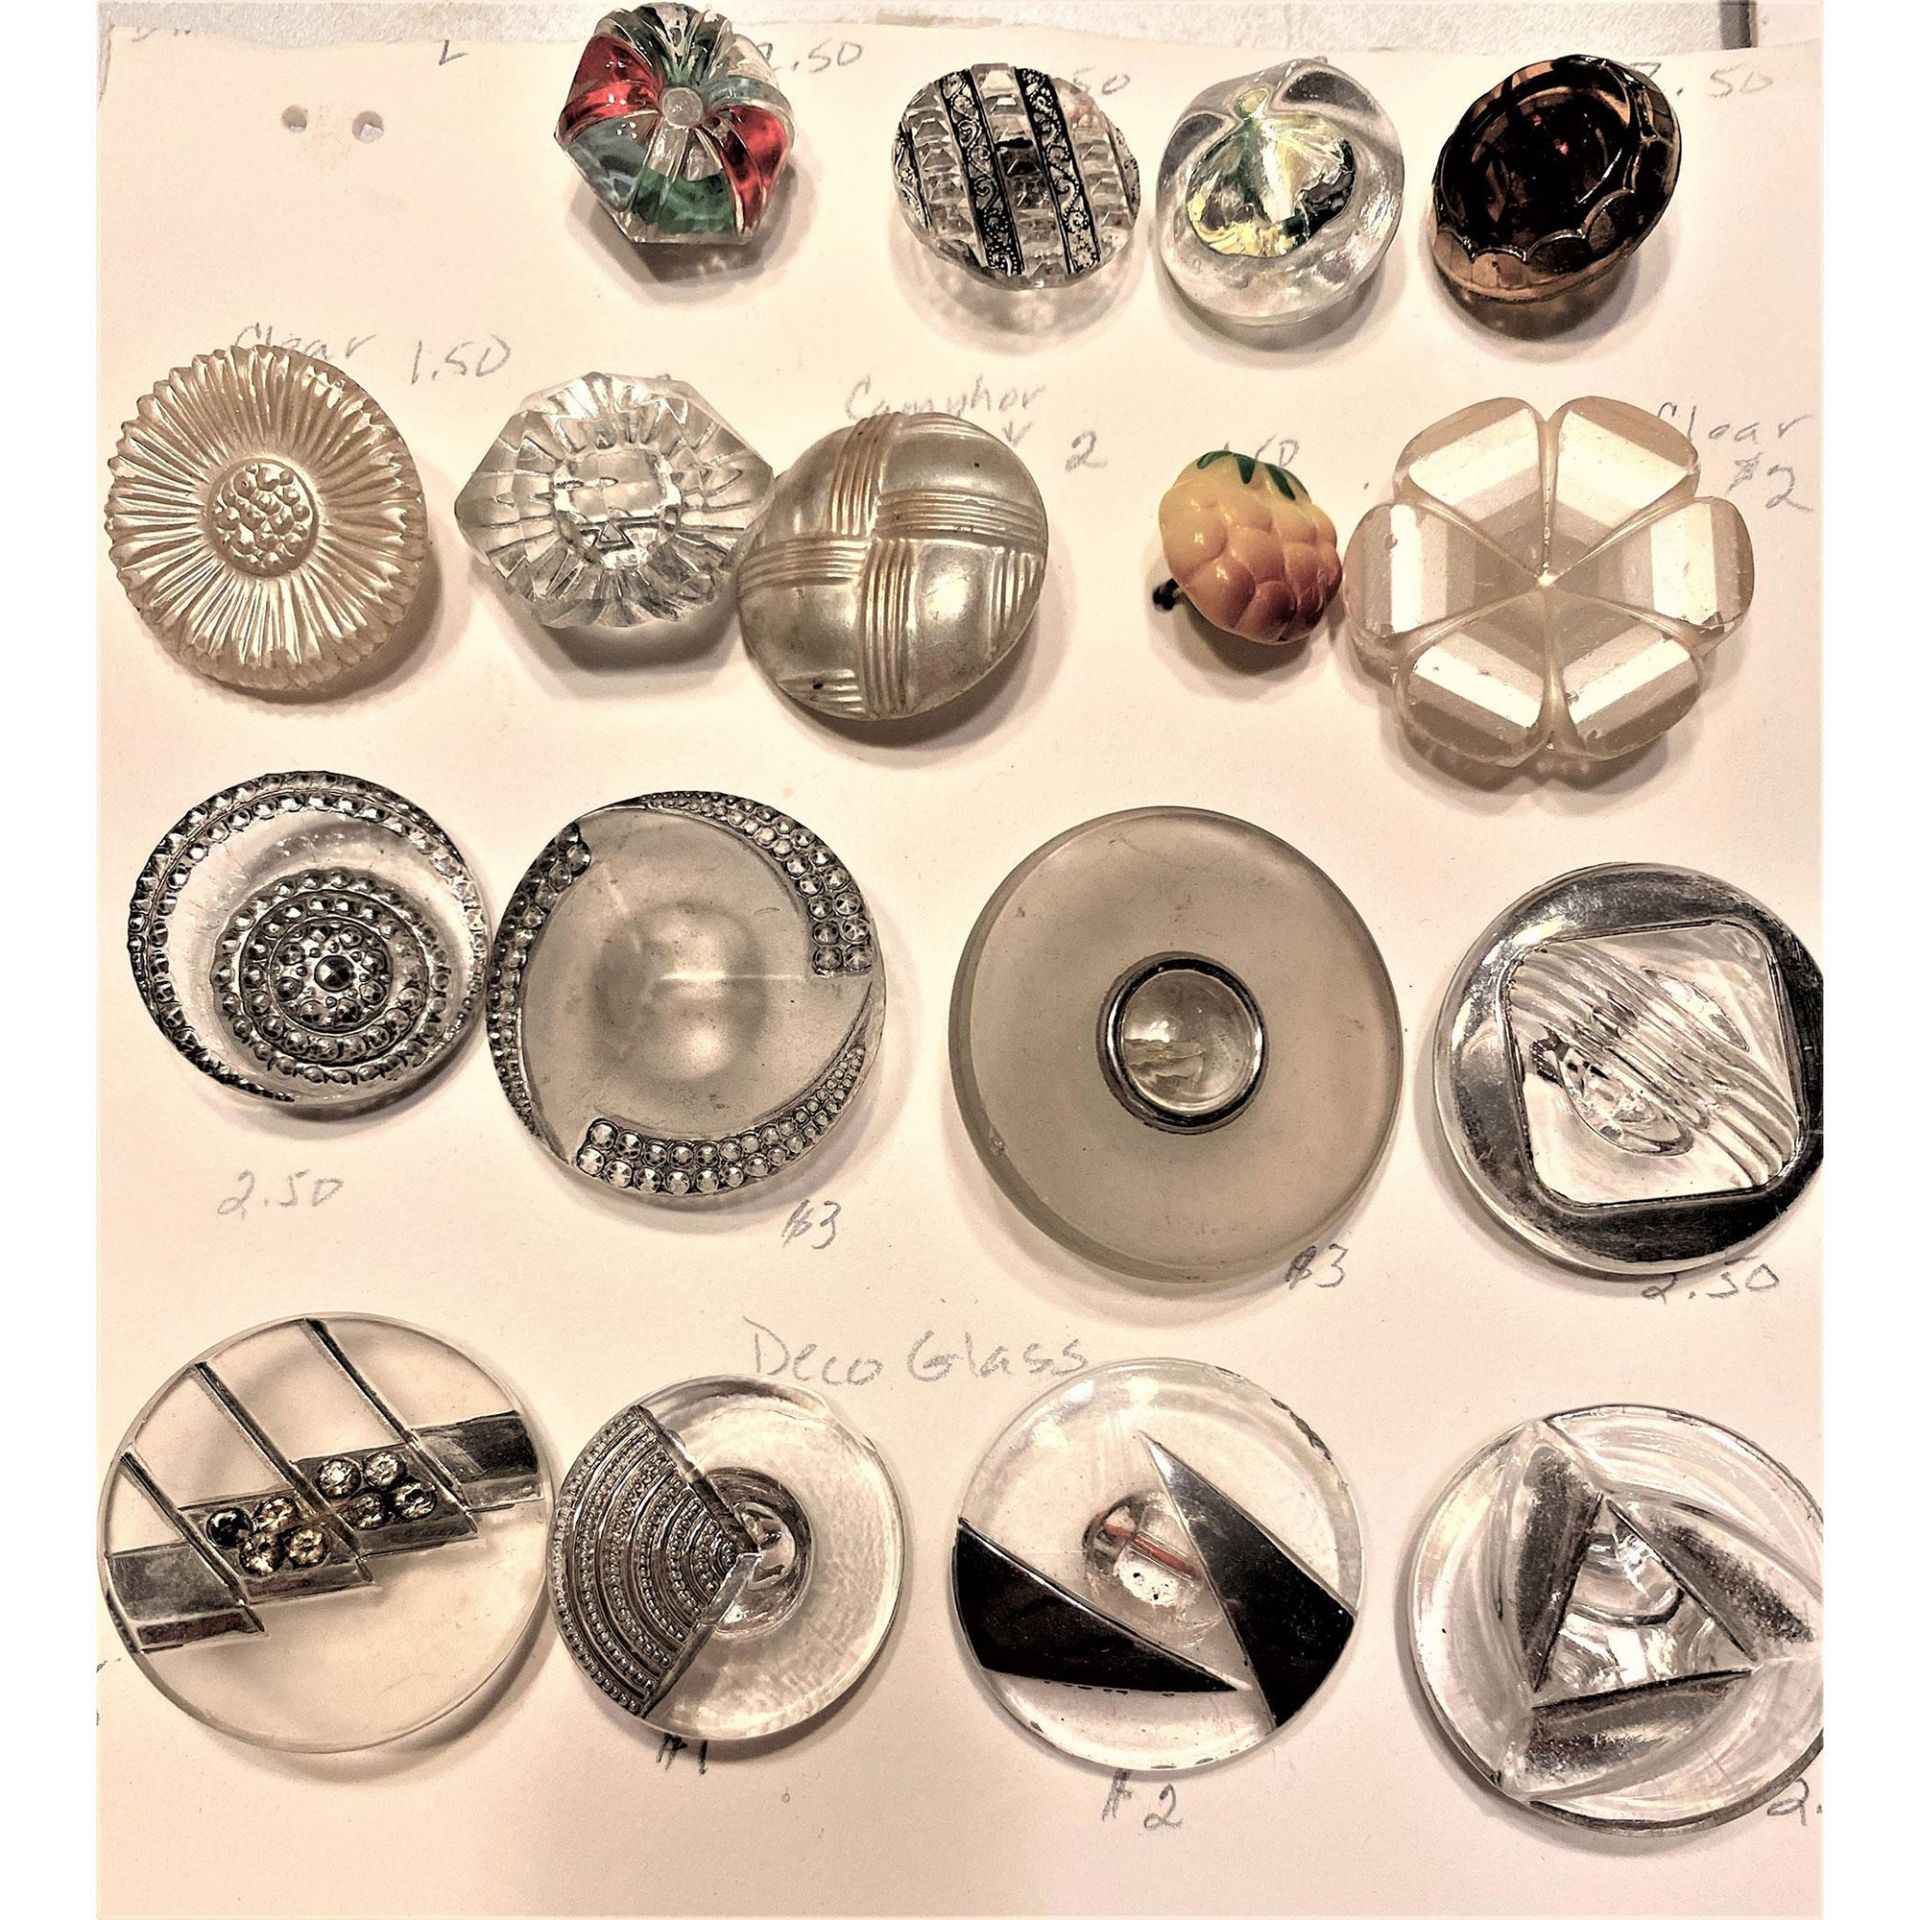 An Assorted Sampling of Buttons